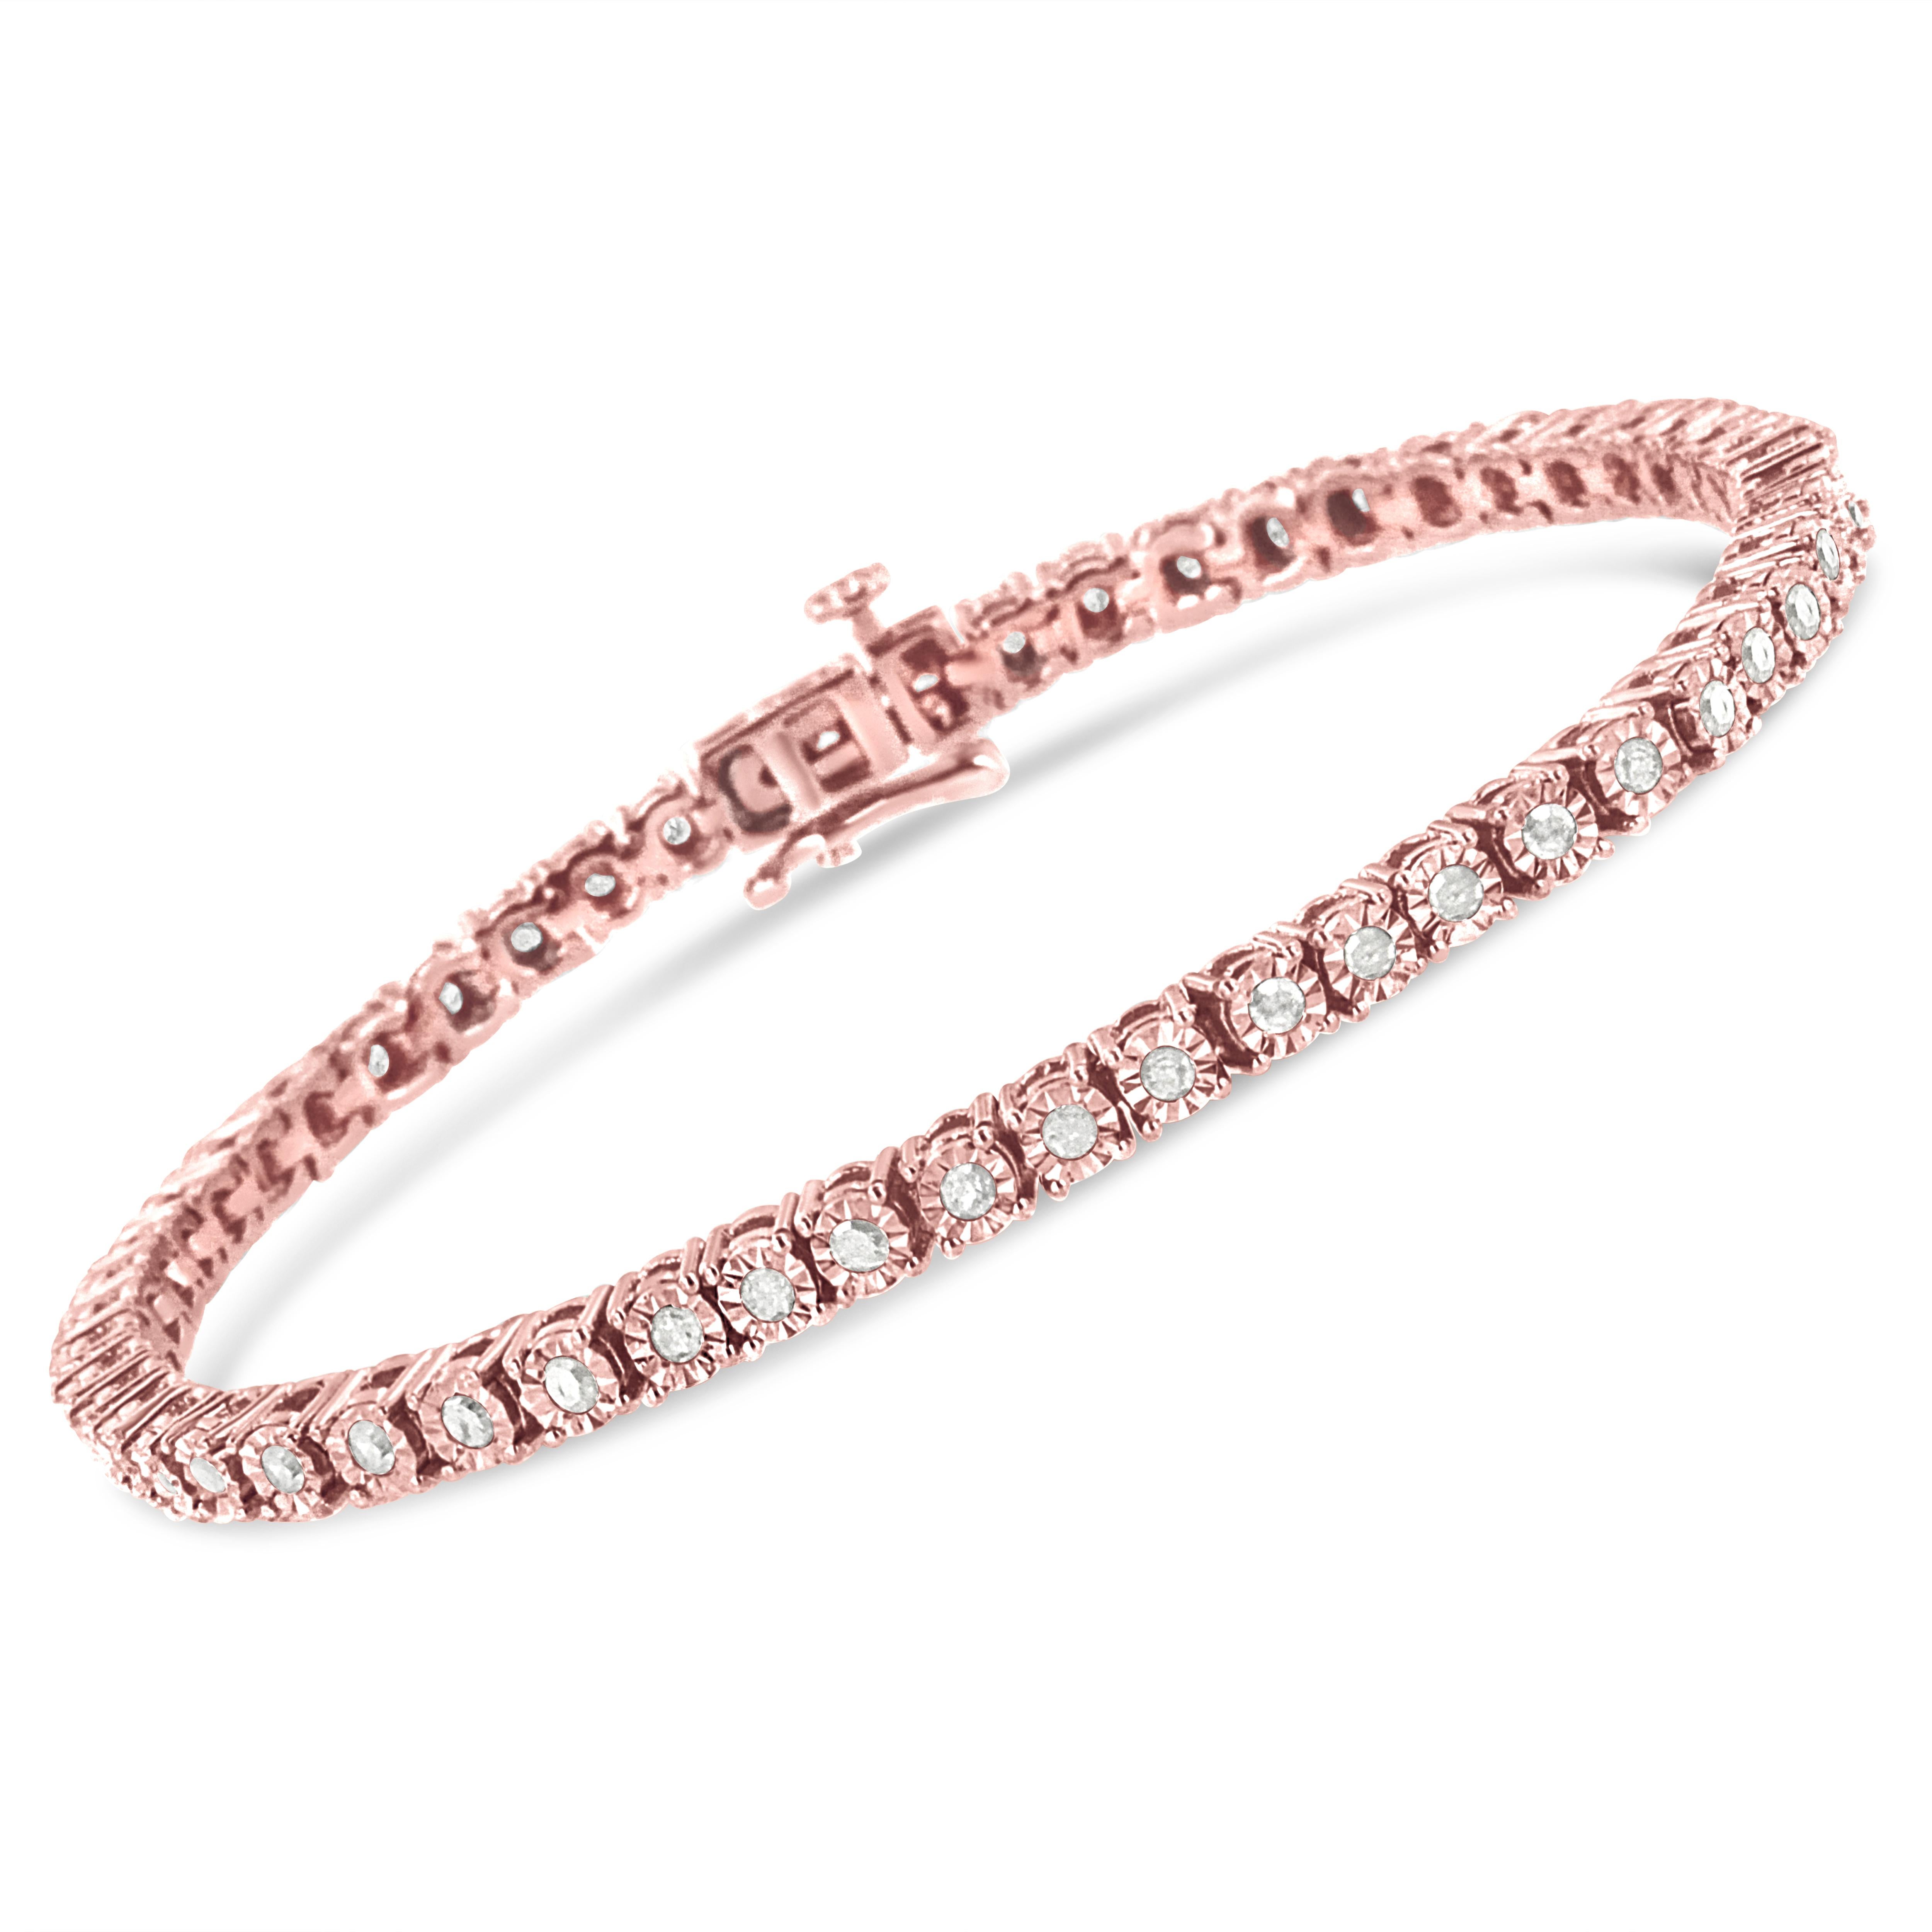 Ce bracelet tennis féminin et luxueux est composé des plus beaux diamants taillés en rose et à facettes multiples, qui rappellent le style Art déco des bijoux de l'époque. Montés sur des maillons en argent sterling véritable et massif (925) pour un